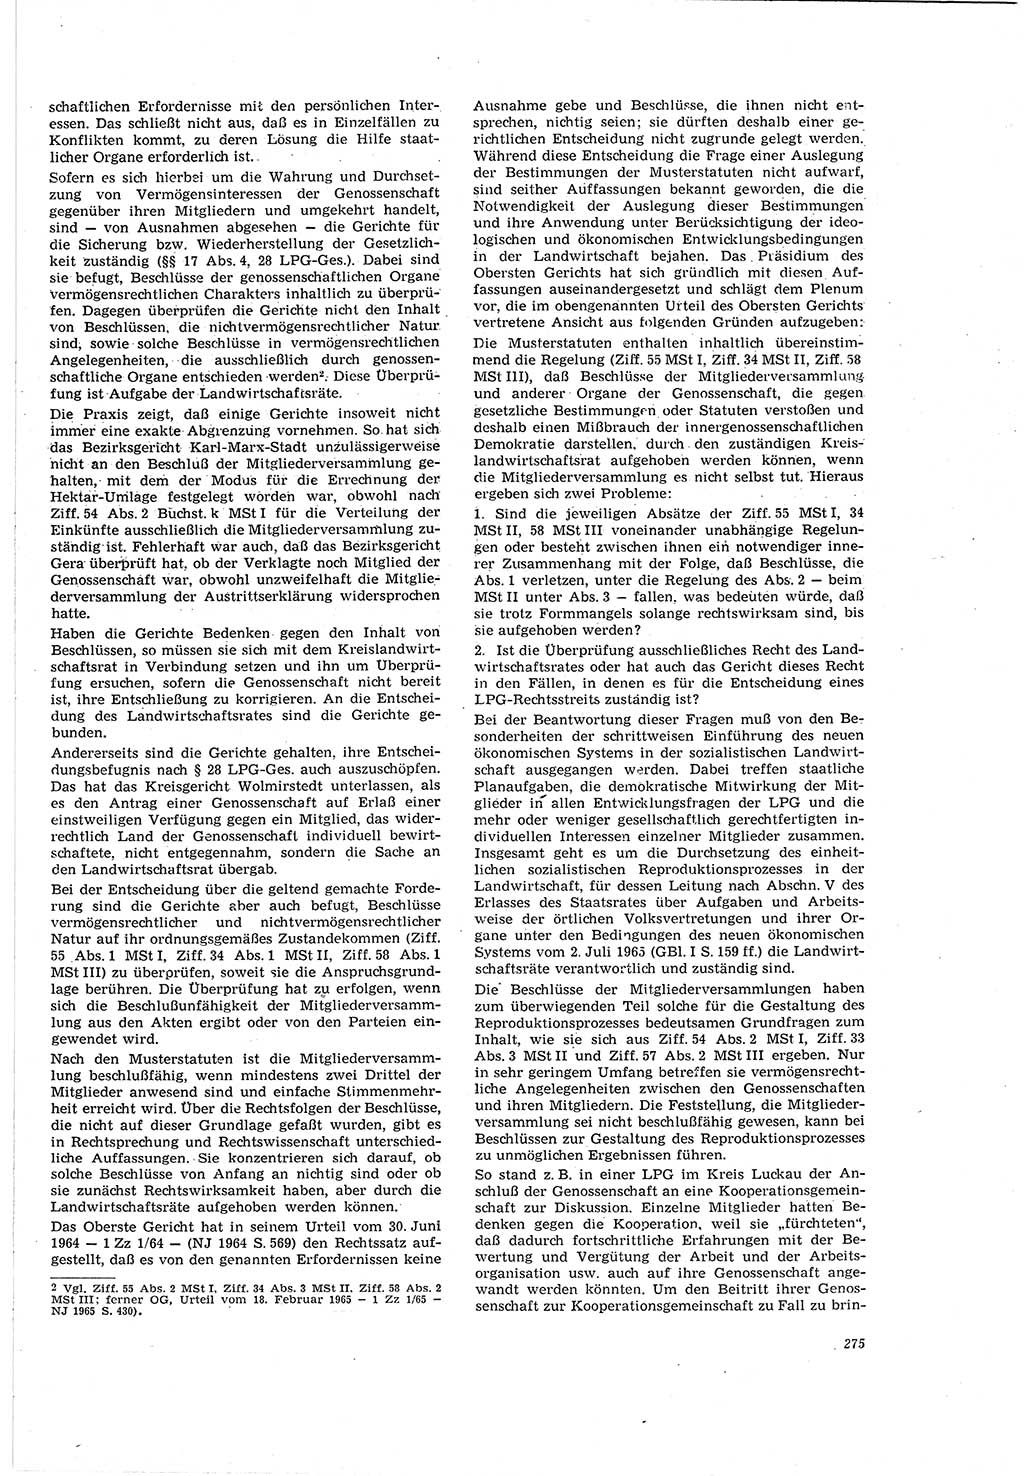 Neue Justiz (NJ), Zeitschrift für Recht und Rechtswissenschaft [Deutsche Demokratische Republik (DDR)], 20. Jahrgang 1966, Seite 275 (NJ DDR 1966, S. 275)